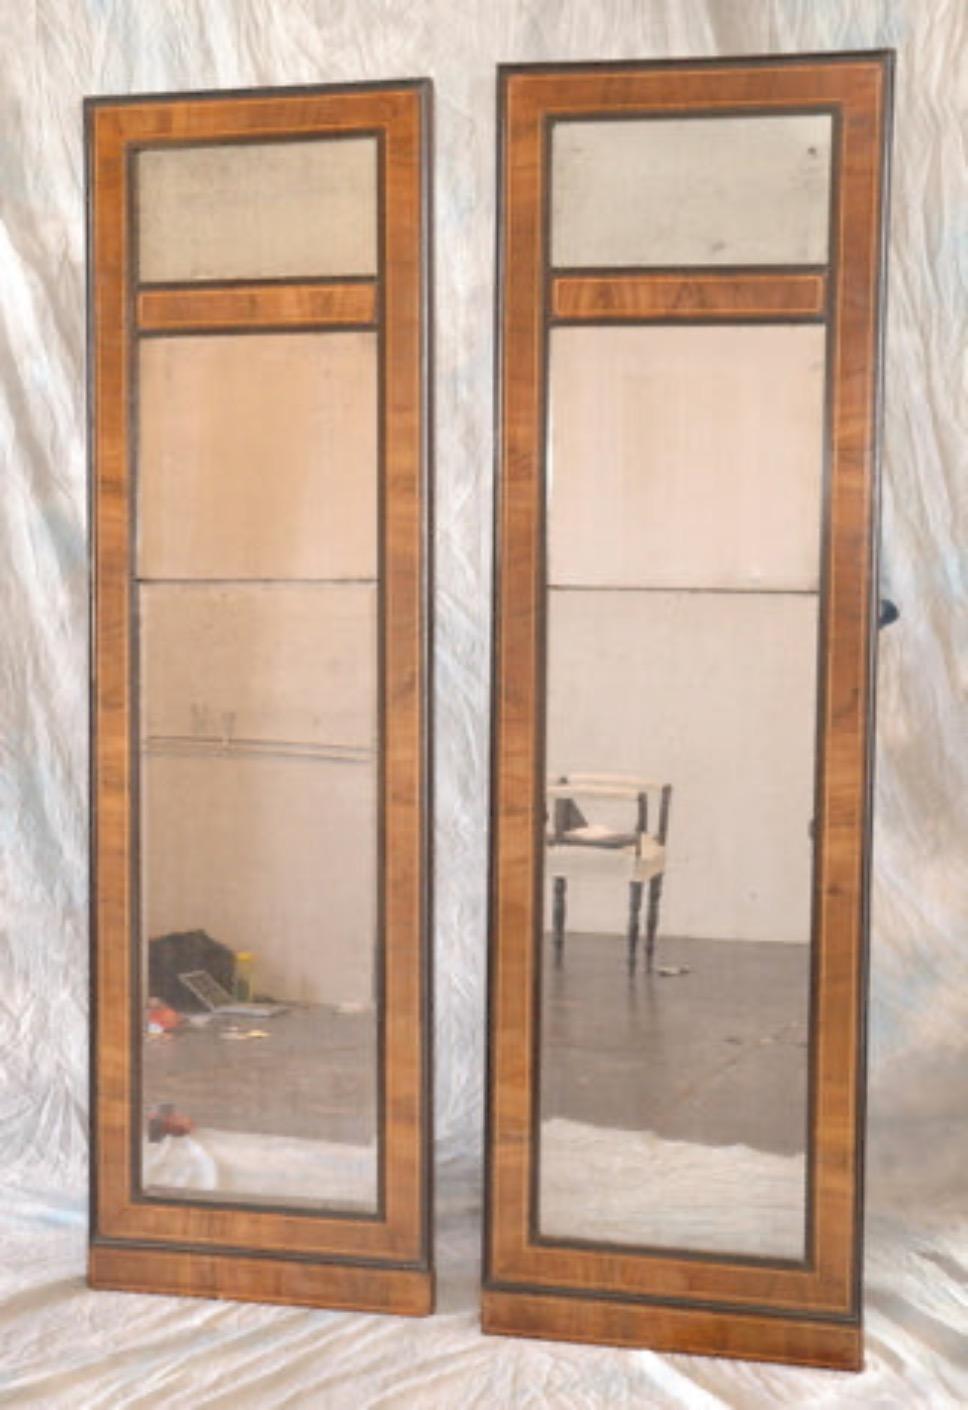 Paire de miroirs danois du début du XIXe siècle de style Empire, avec cadre en bois de noyer et verre d'origine. Avec ses fines garnitures noires en ébénisterie et ses panneaux architecturaux simples, la paire a un aspect de fenêtre moderne mais